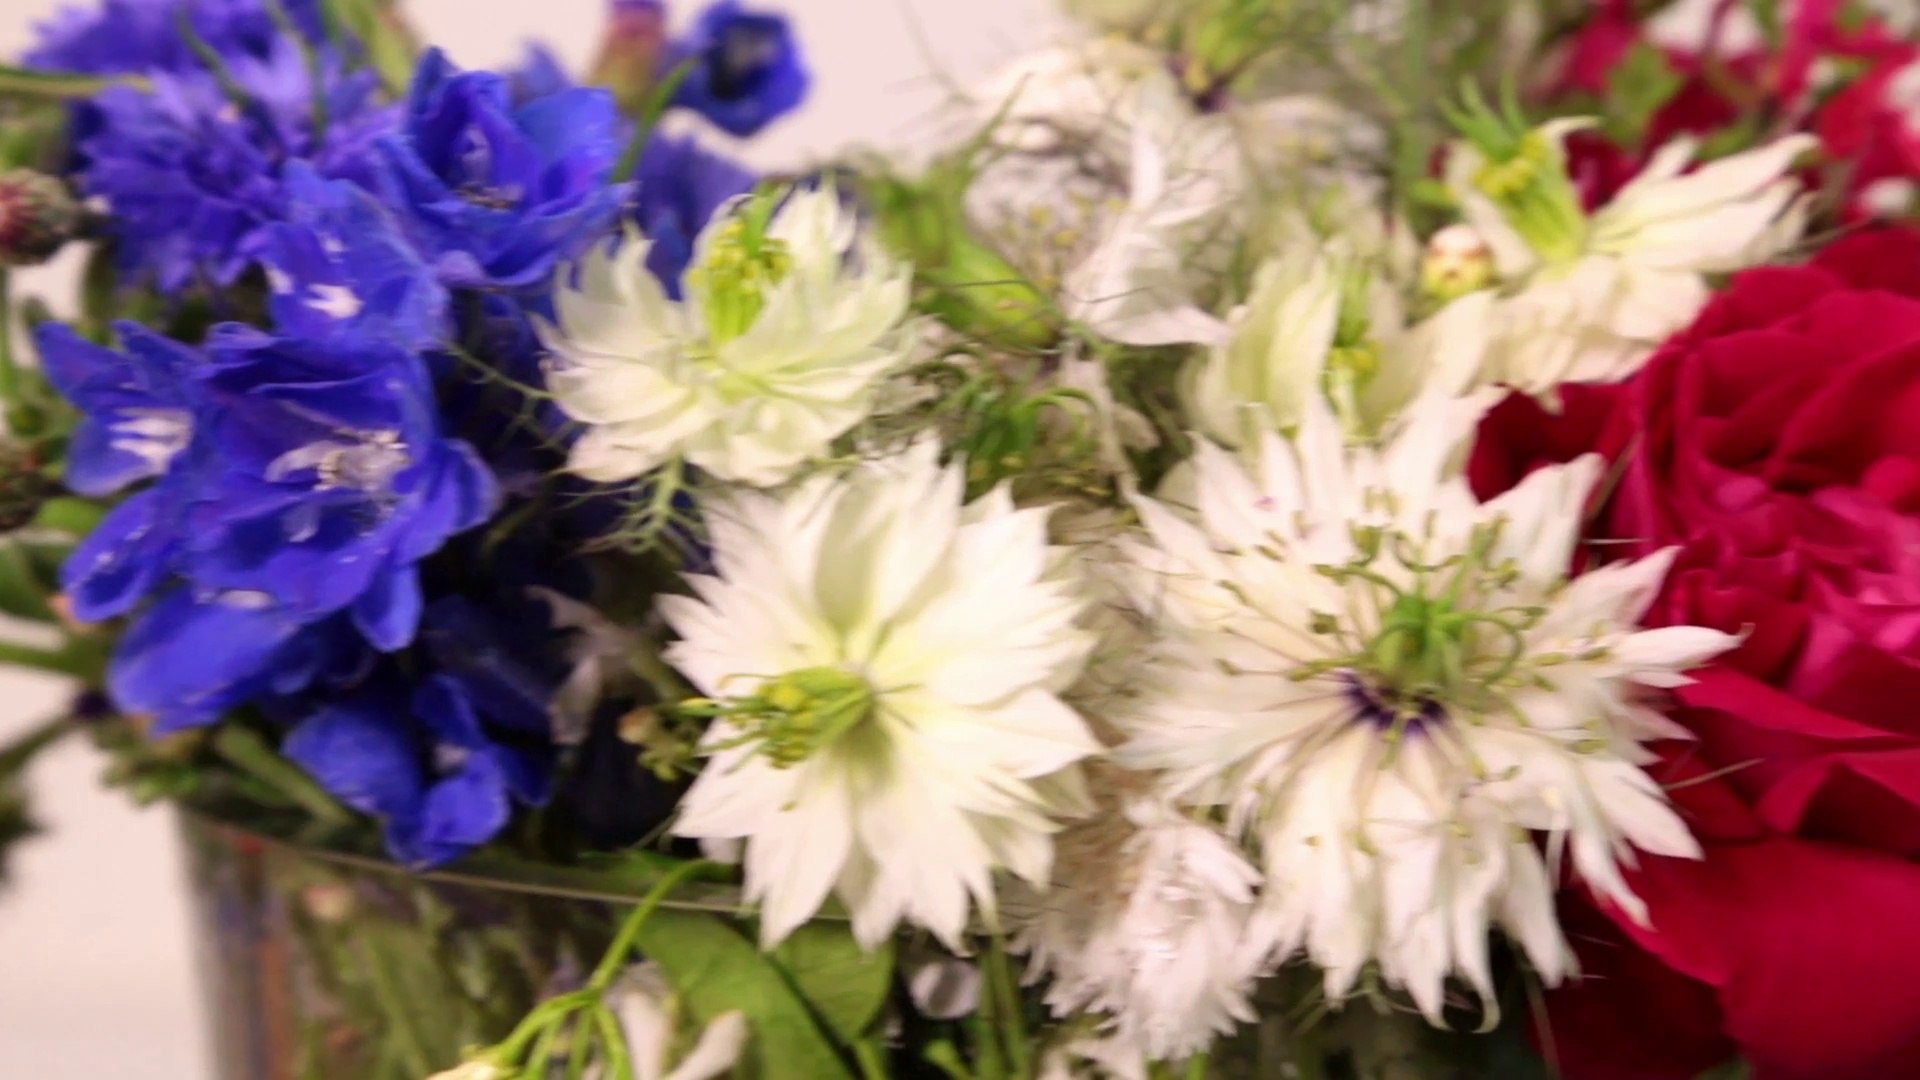 Comment réaliser un bouquet bleu, blanc et rouge ? - Vidéo Dailymotion